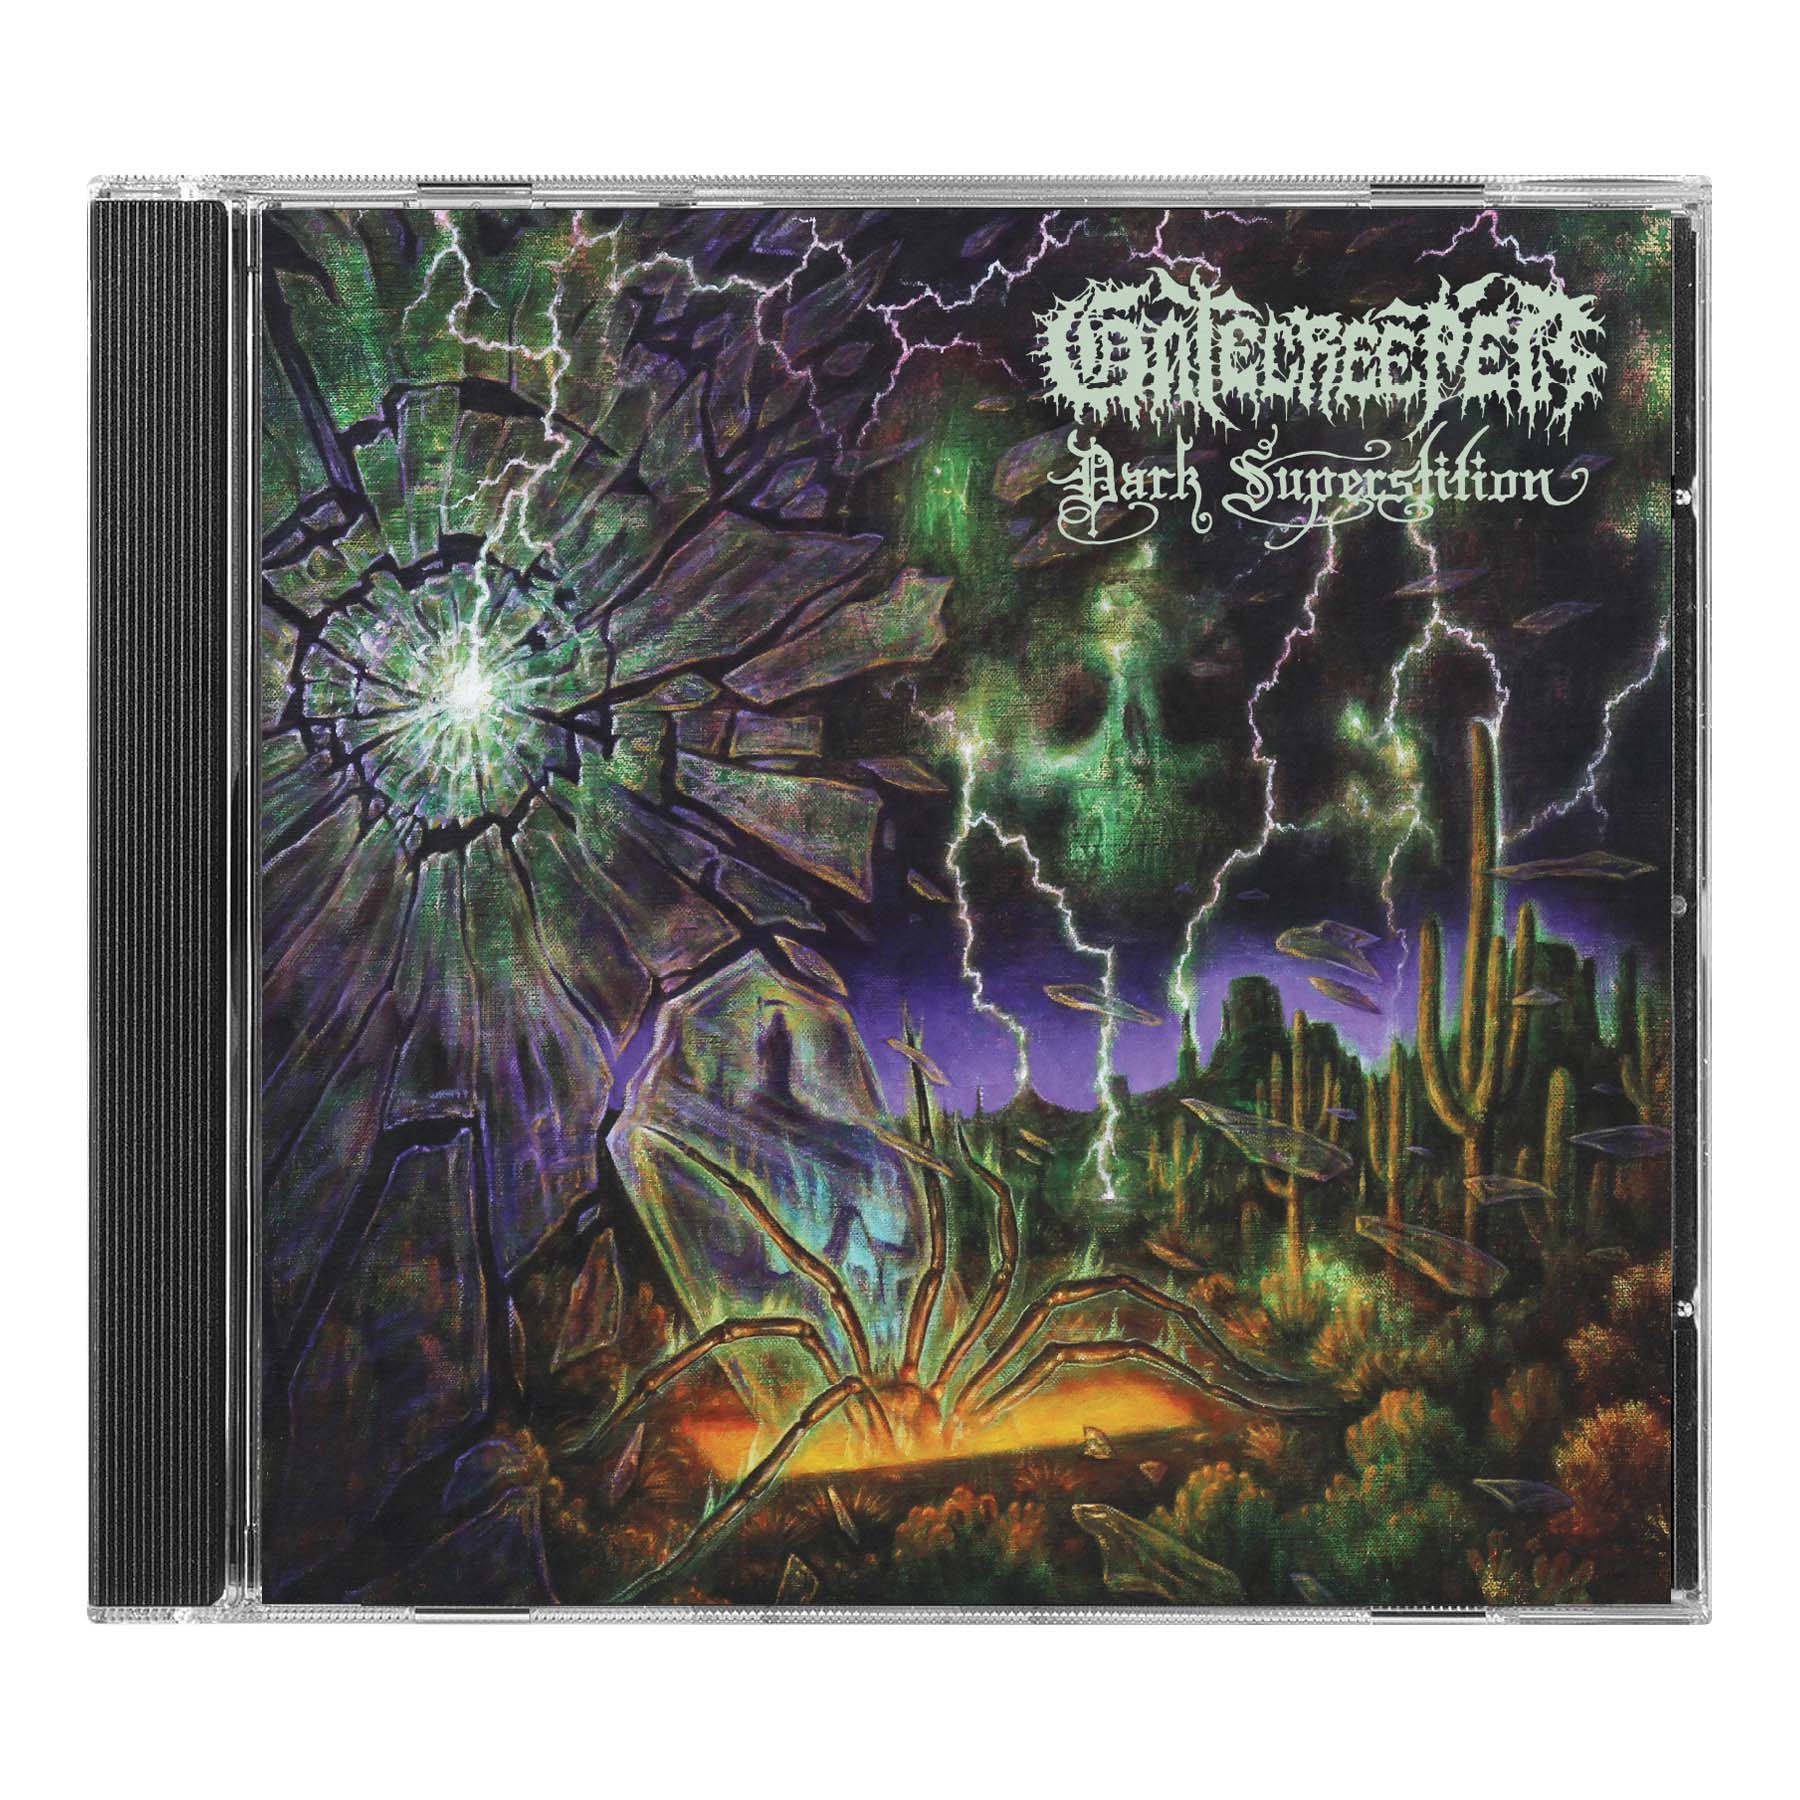 Gatecreeper "Dark Superstition" CD